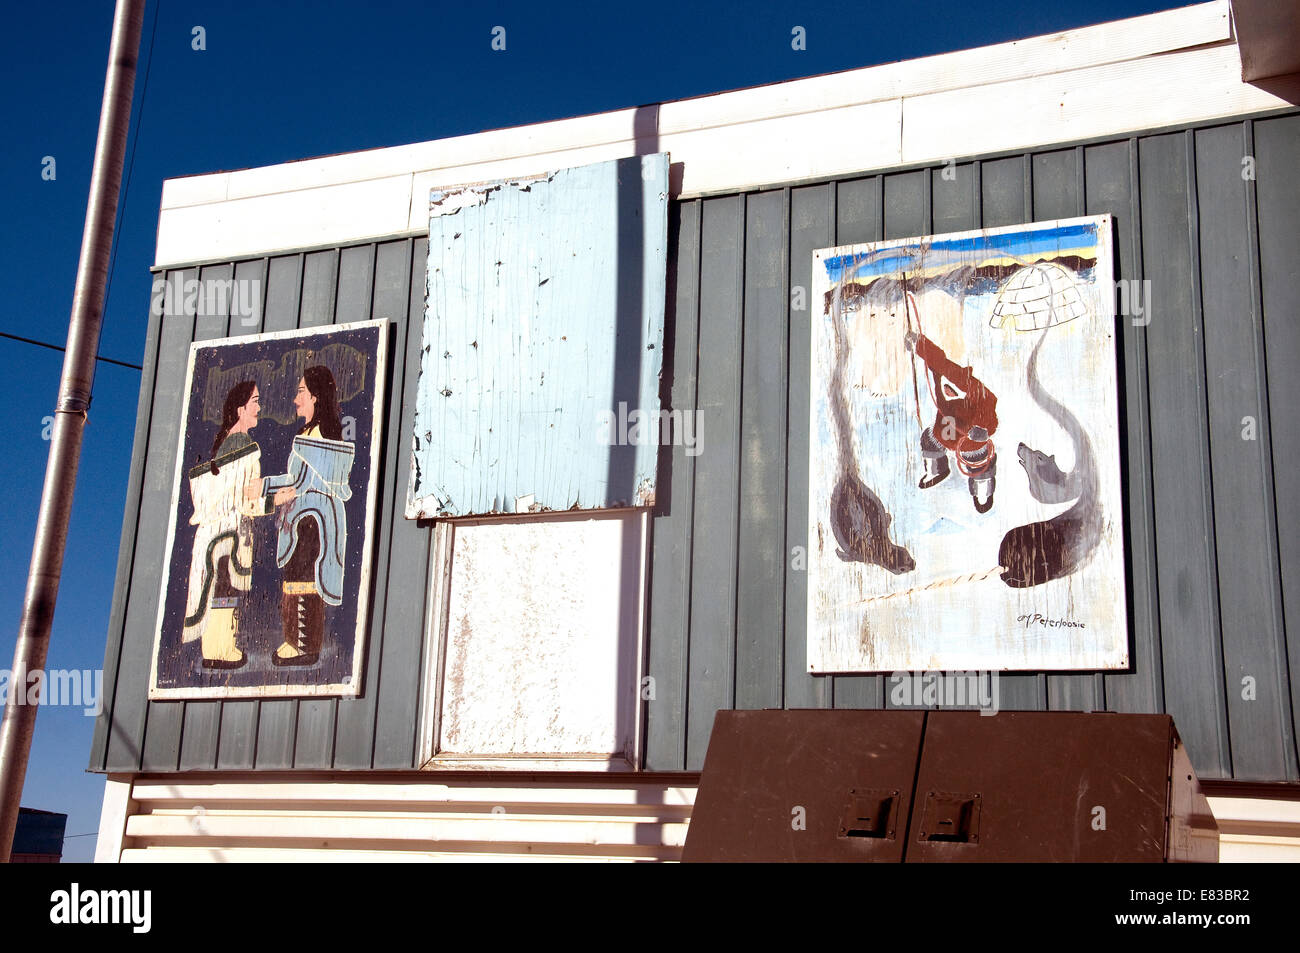 La facciata di stagno di ingresso Art College visualizza weathered dipinti della cultura locale--gola cantando, sinistra e caccia Foto Stock